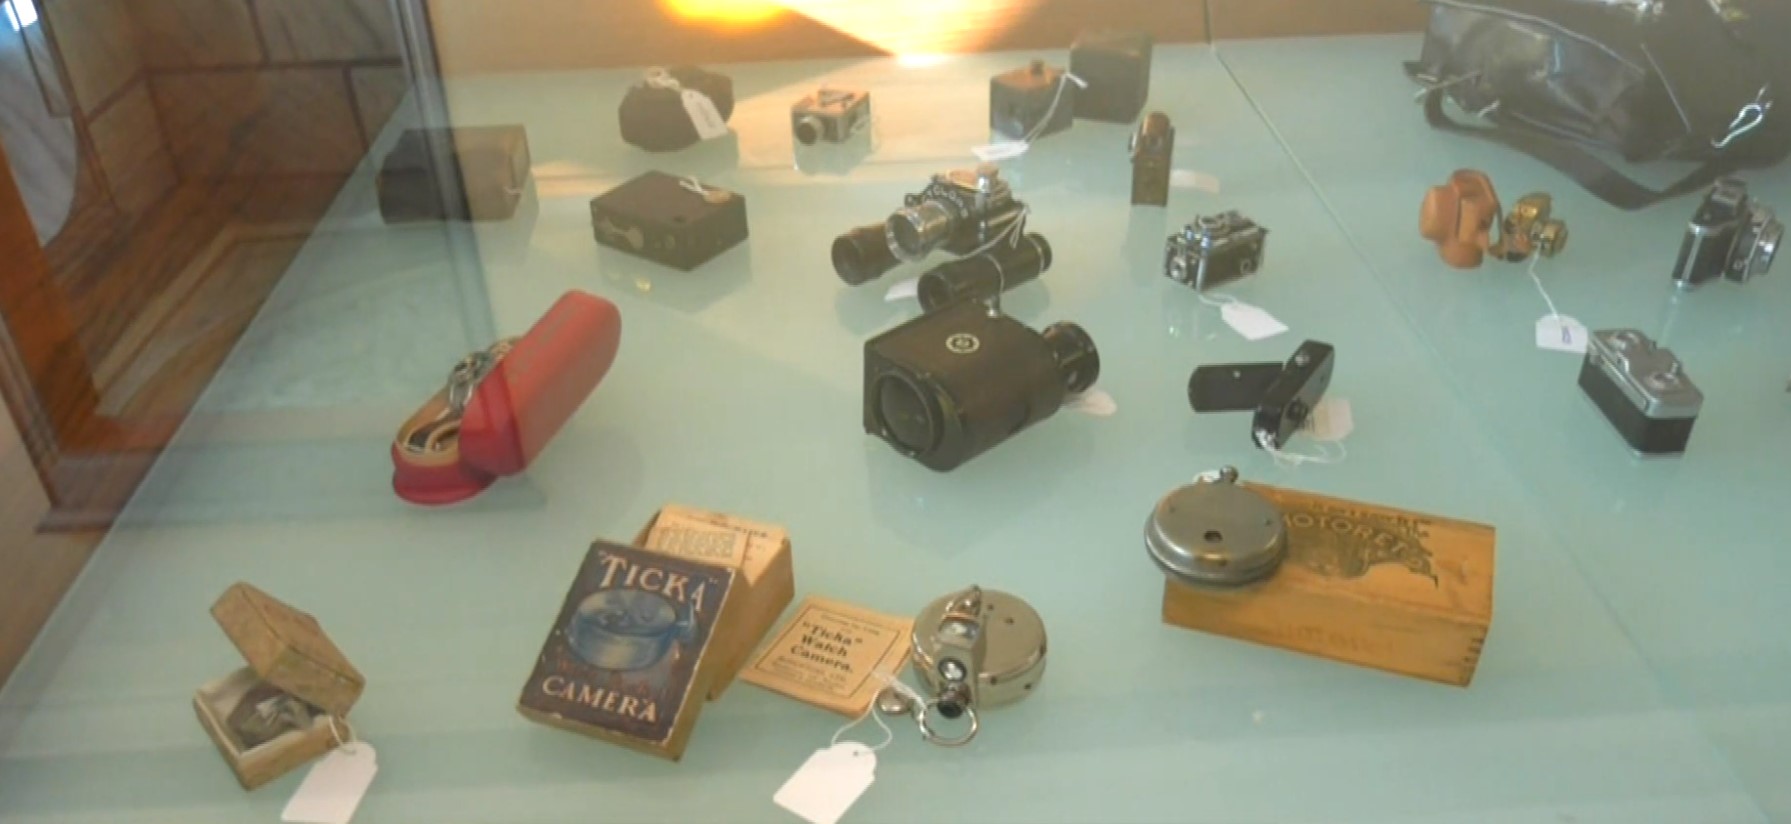 Δράμα: Μουσείο φωτογραφικών μηχανών στο Μαρμάρινο Σπίτι